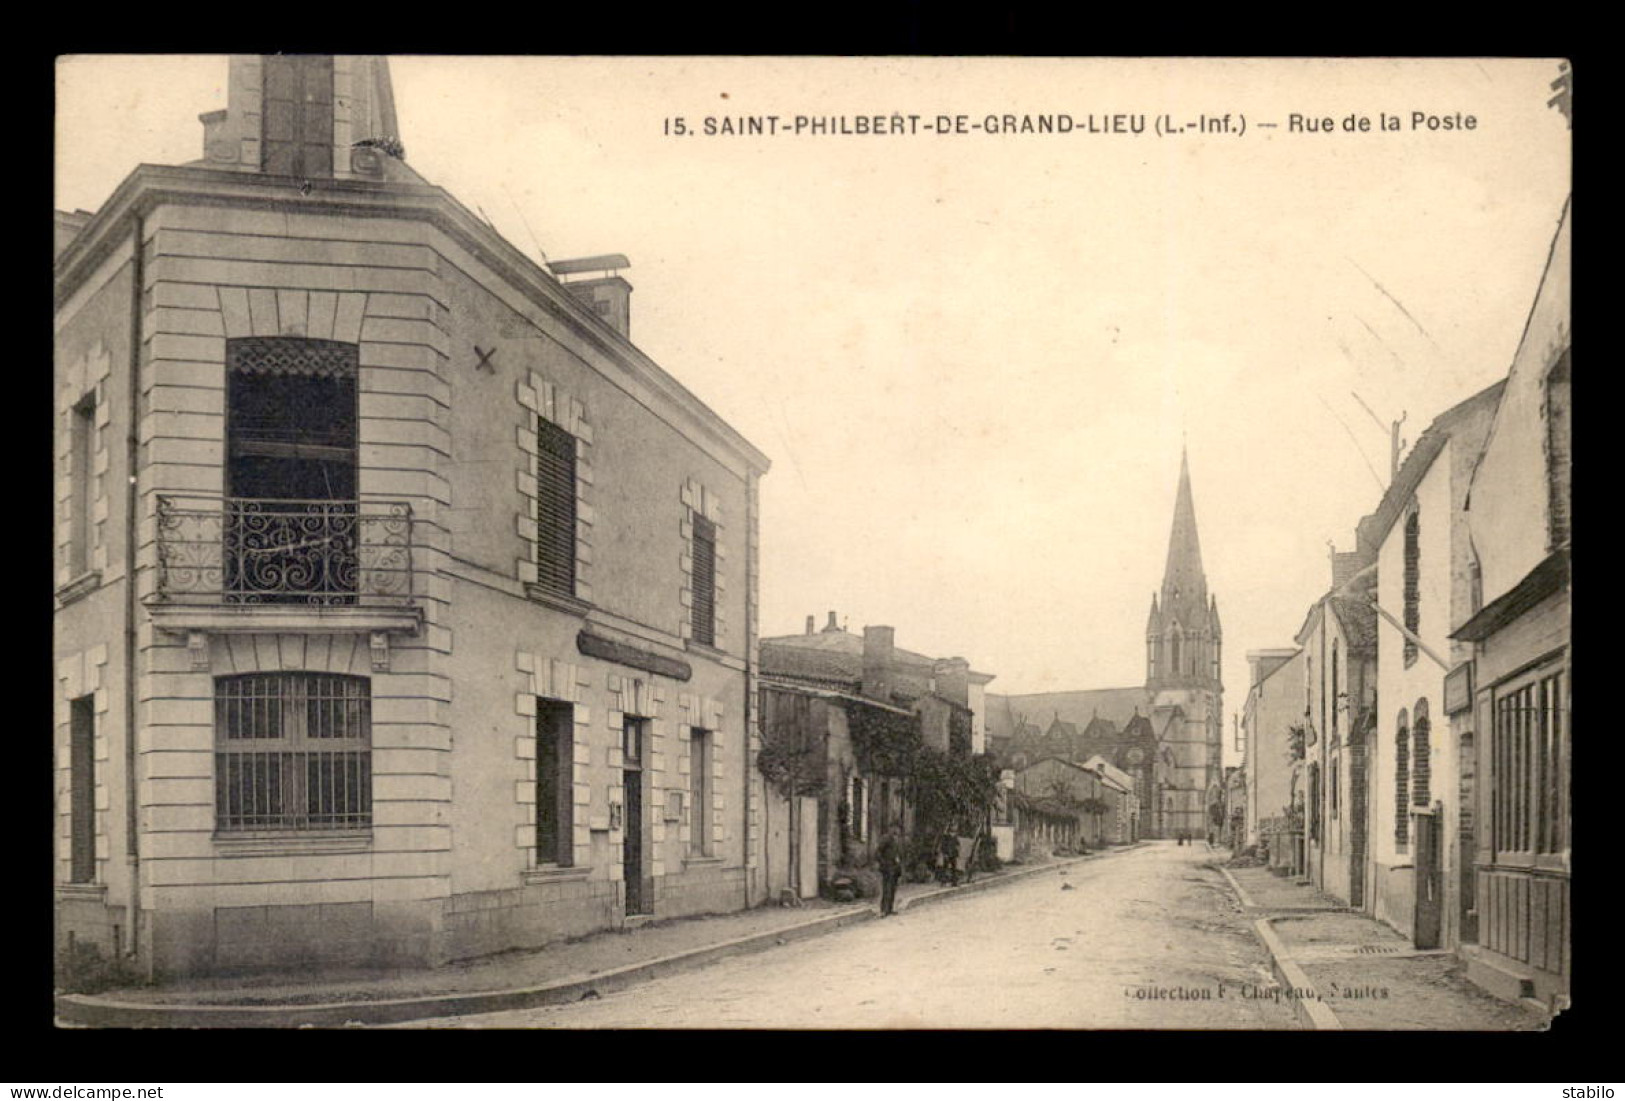 44 - ST-PHILIBERT-DE-GRAND-LIEU - RUE DE LA POSTE - VOIR ETAT - Saint-Philbert-de-Grand-Lieu